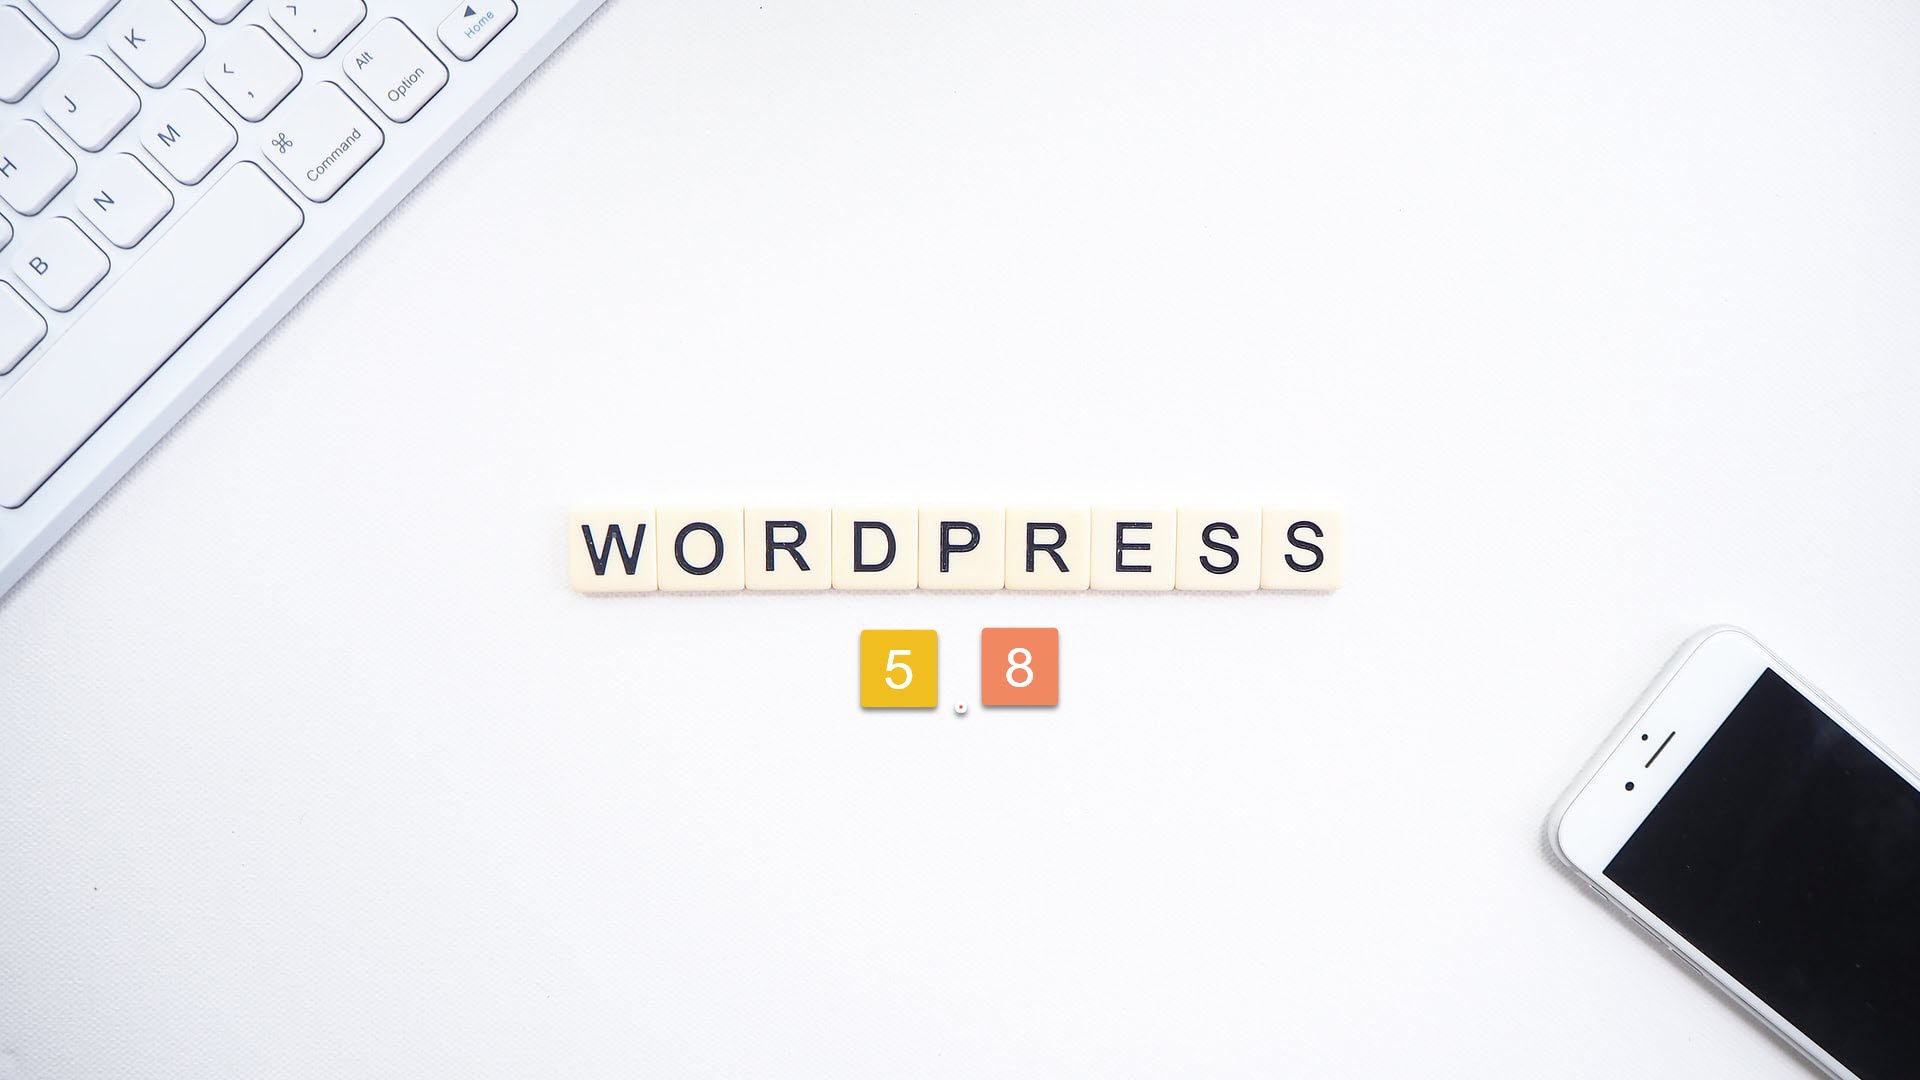 إصدار WordPress 5.8 – هل ستحدث نقلة نوعية للوردبريس مع الإصدار القادم بعد تفعيل التحرير الكامل للموقع؟